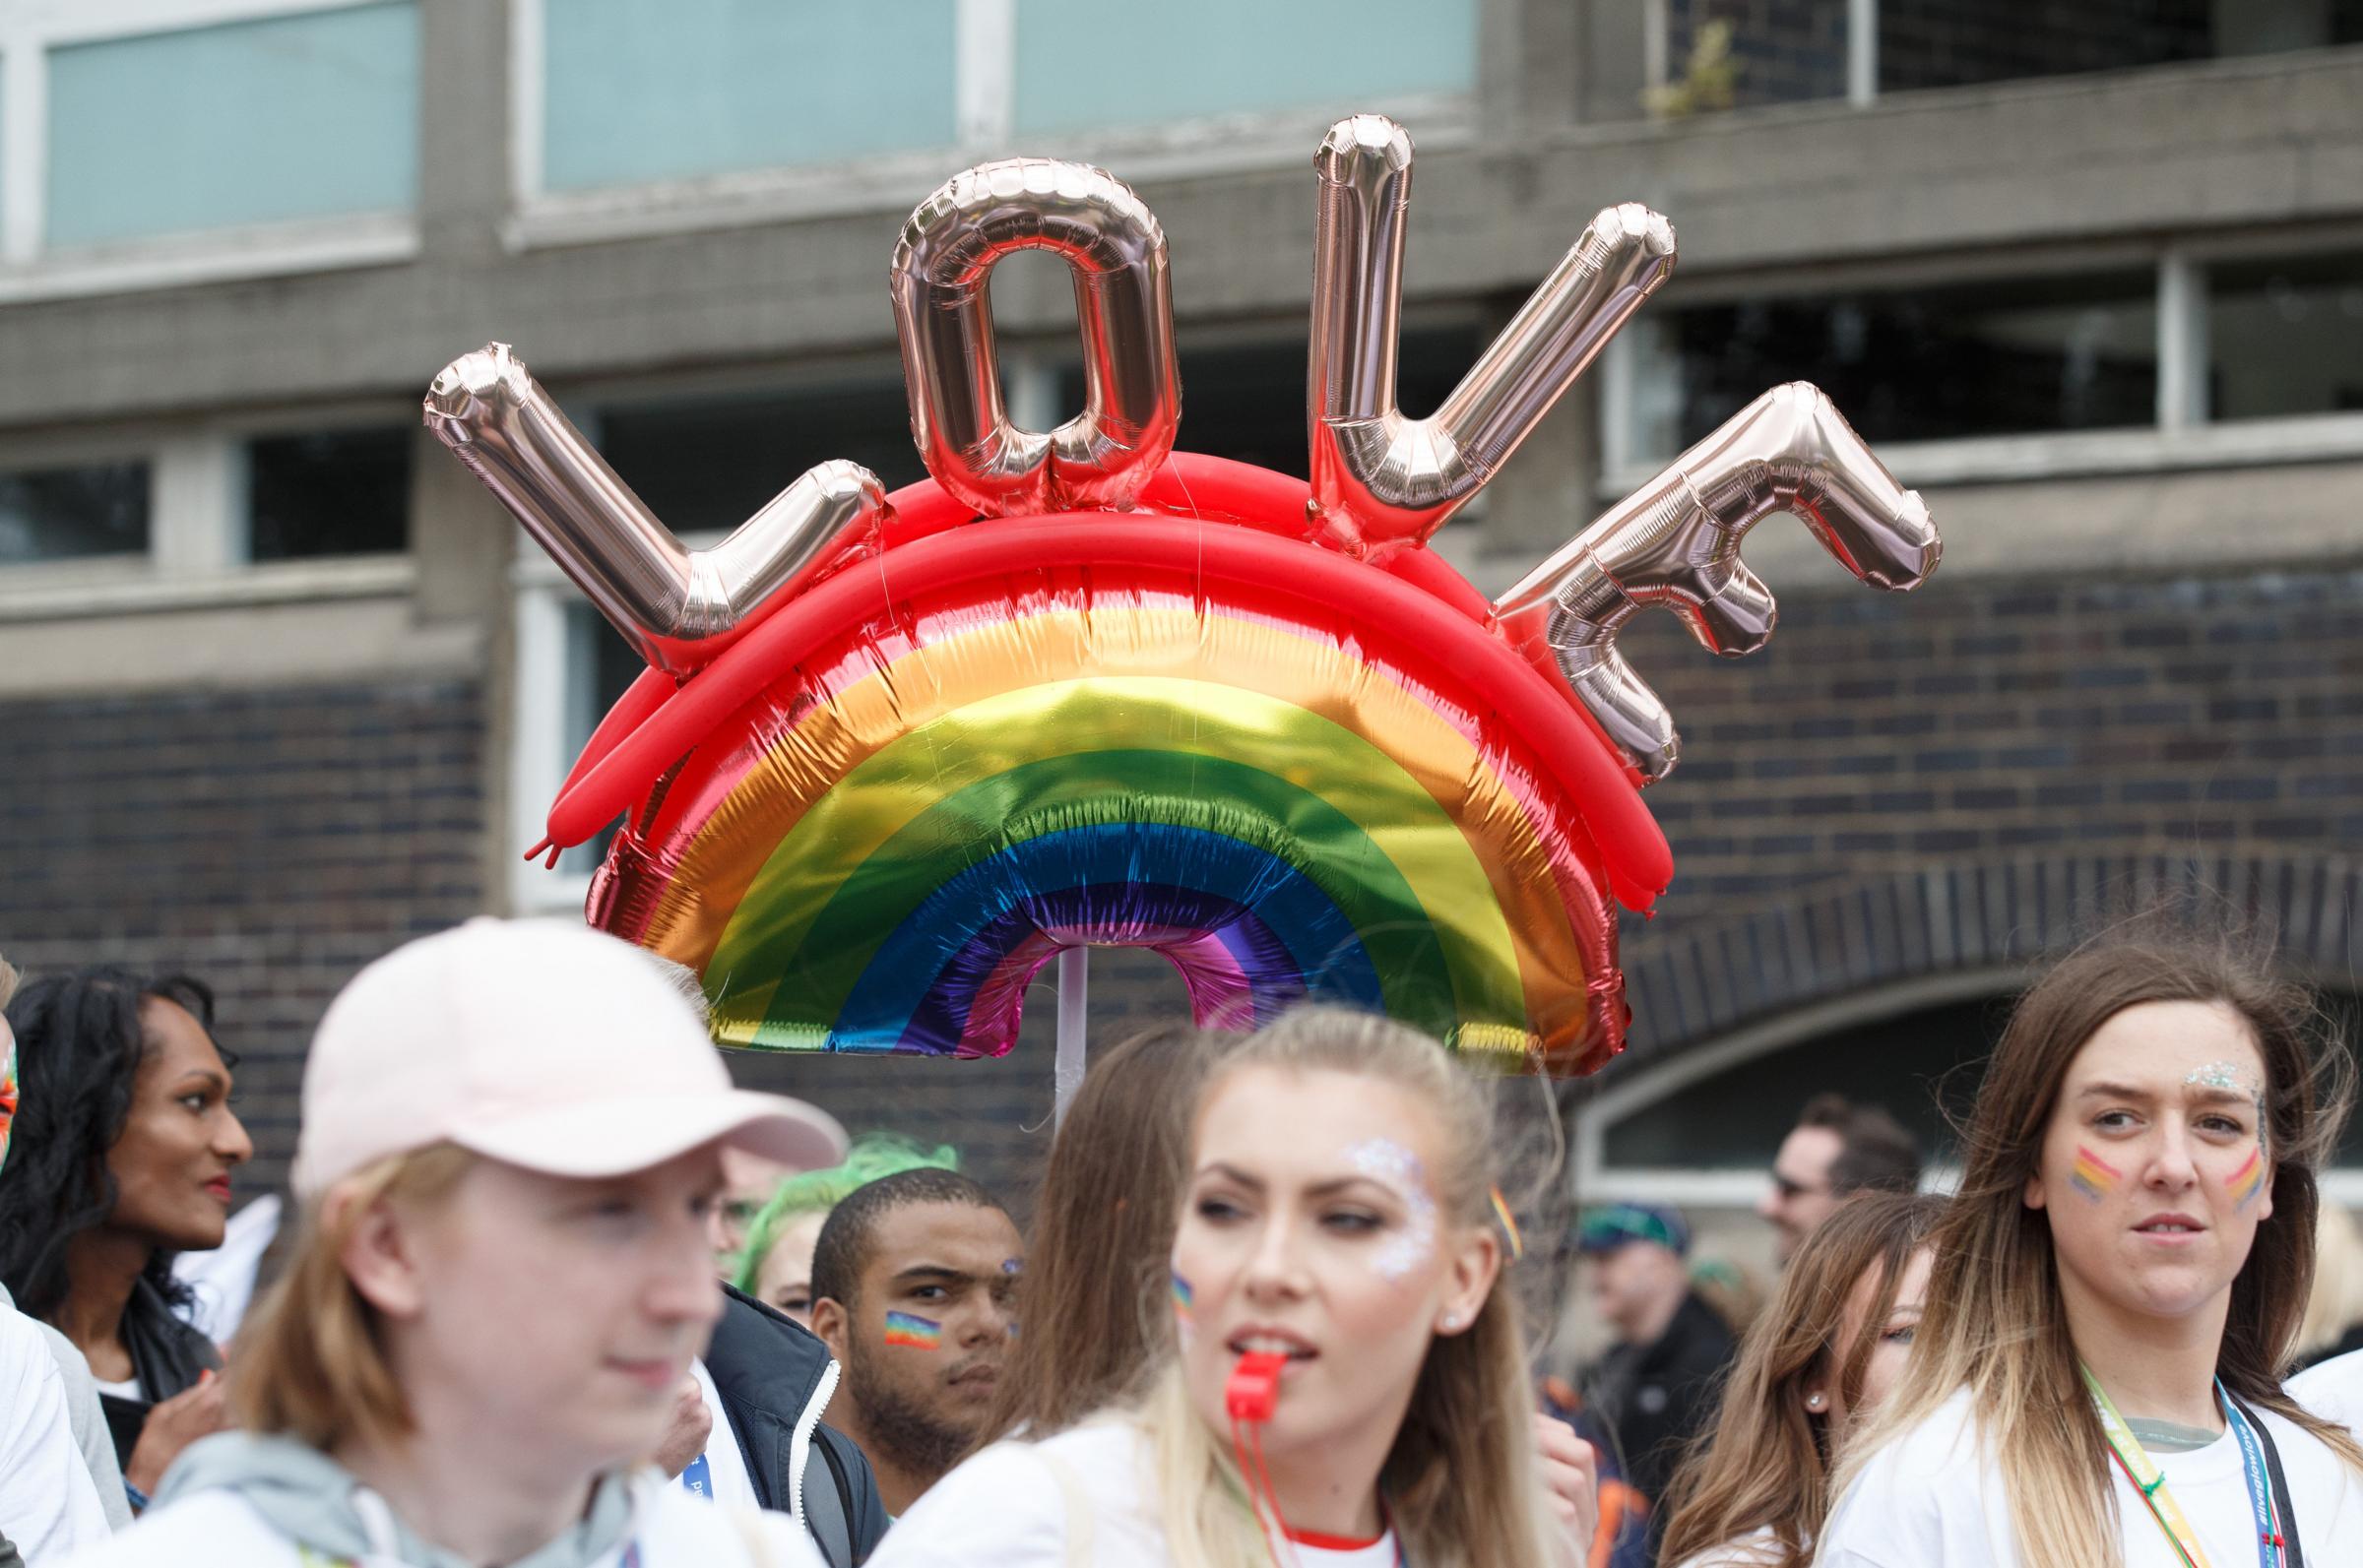 Glasgow's Pride Mardi Gla will be held in September